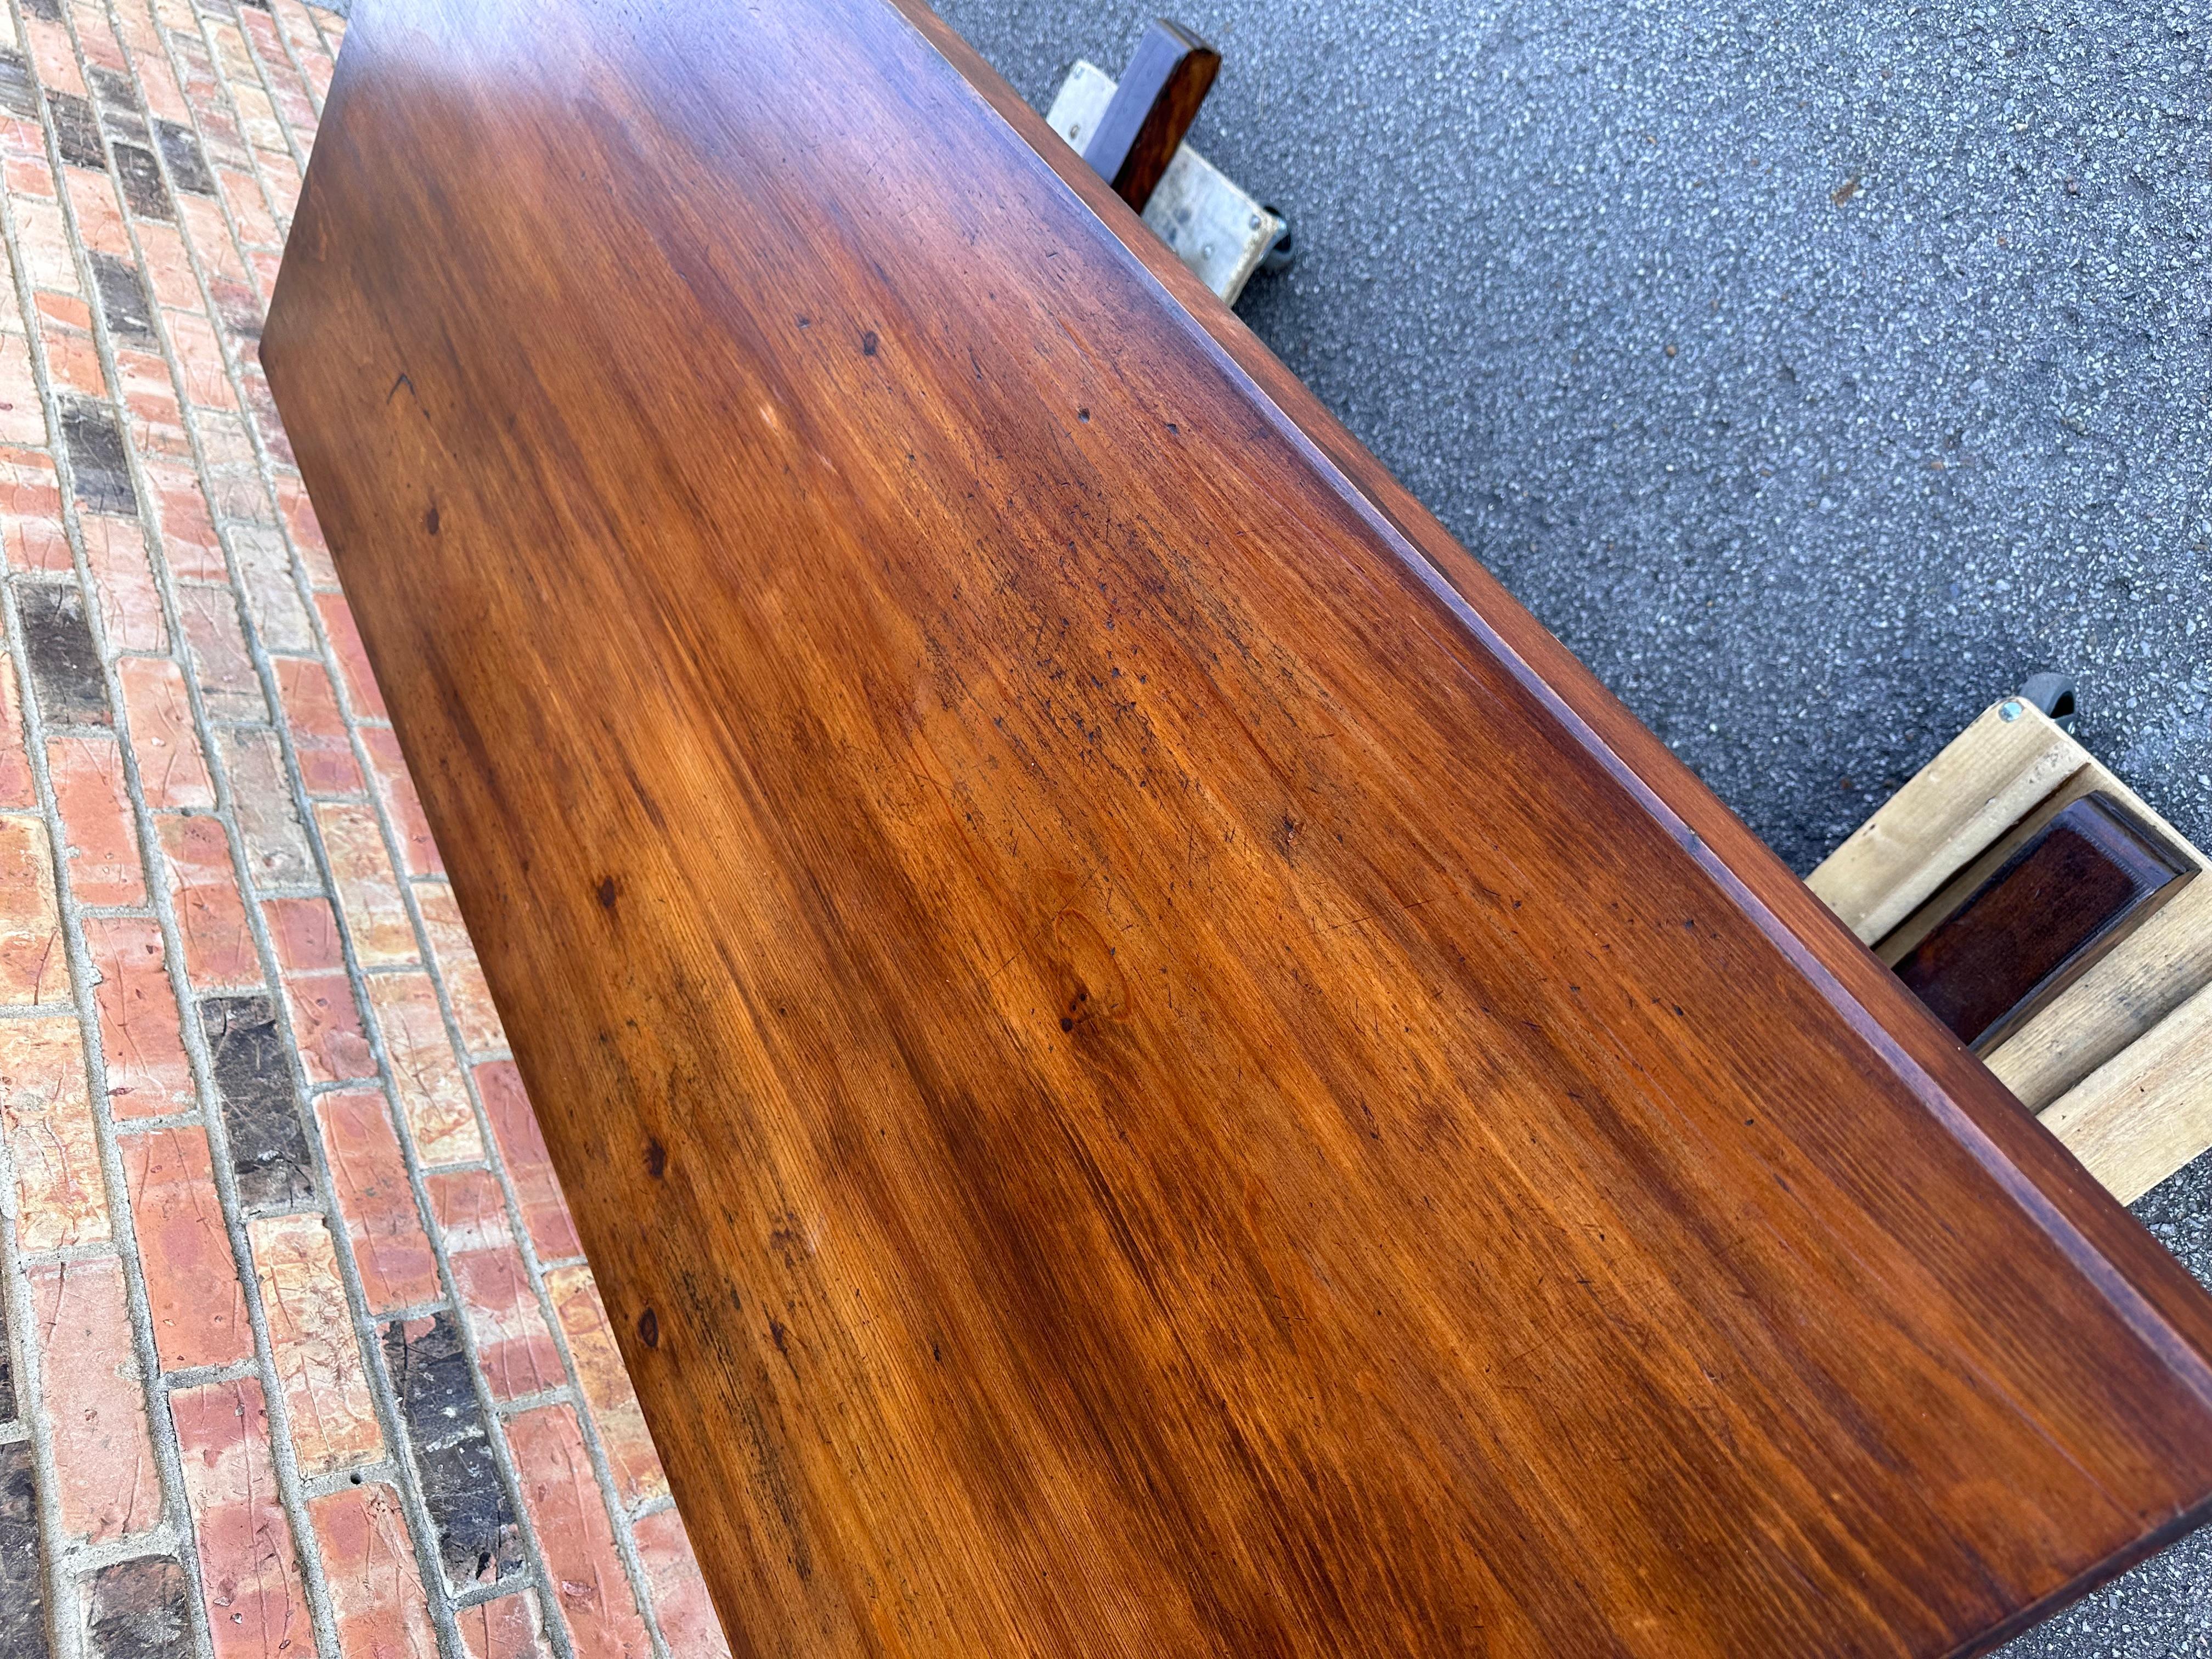 Das ist ein wunderschöner französischer Bauernhoftisch! Einfache, klare Linien und eine glatte Oberfläche, die eine wohnliche Eleganz ausstrahlen. Die Patina an diesem Stück ist wunderschön und bringt die Details im Holz besonders gut zur Geltung.